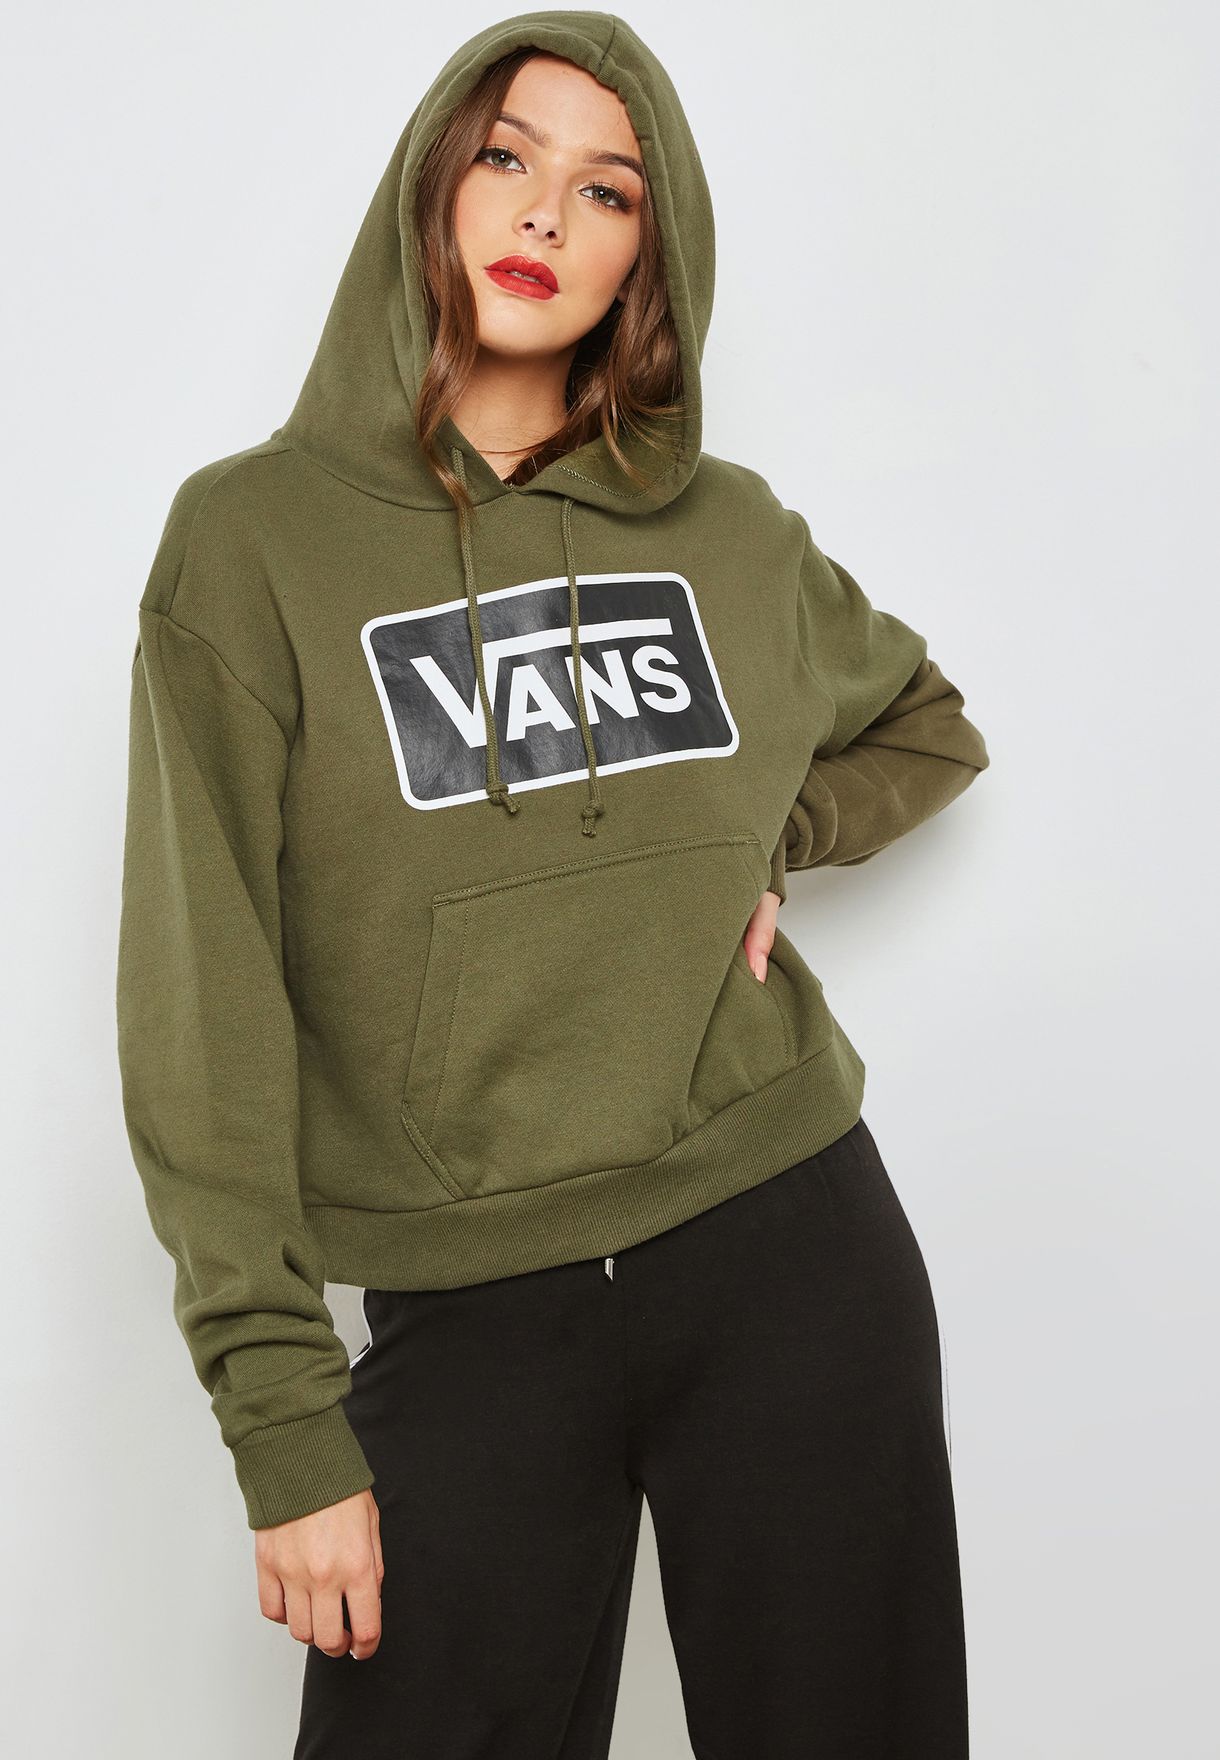 vans hoodie womens